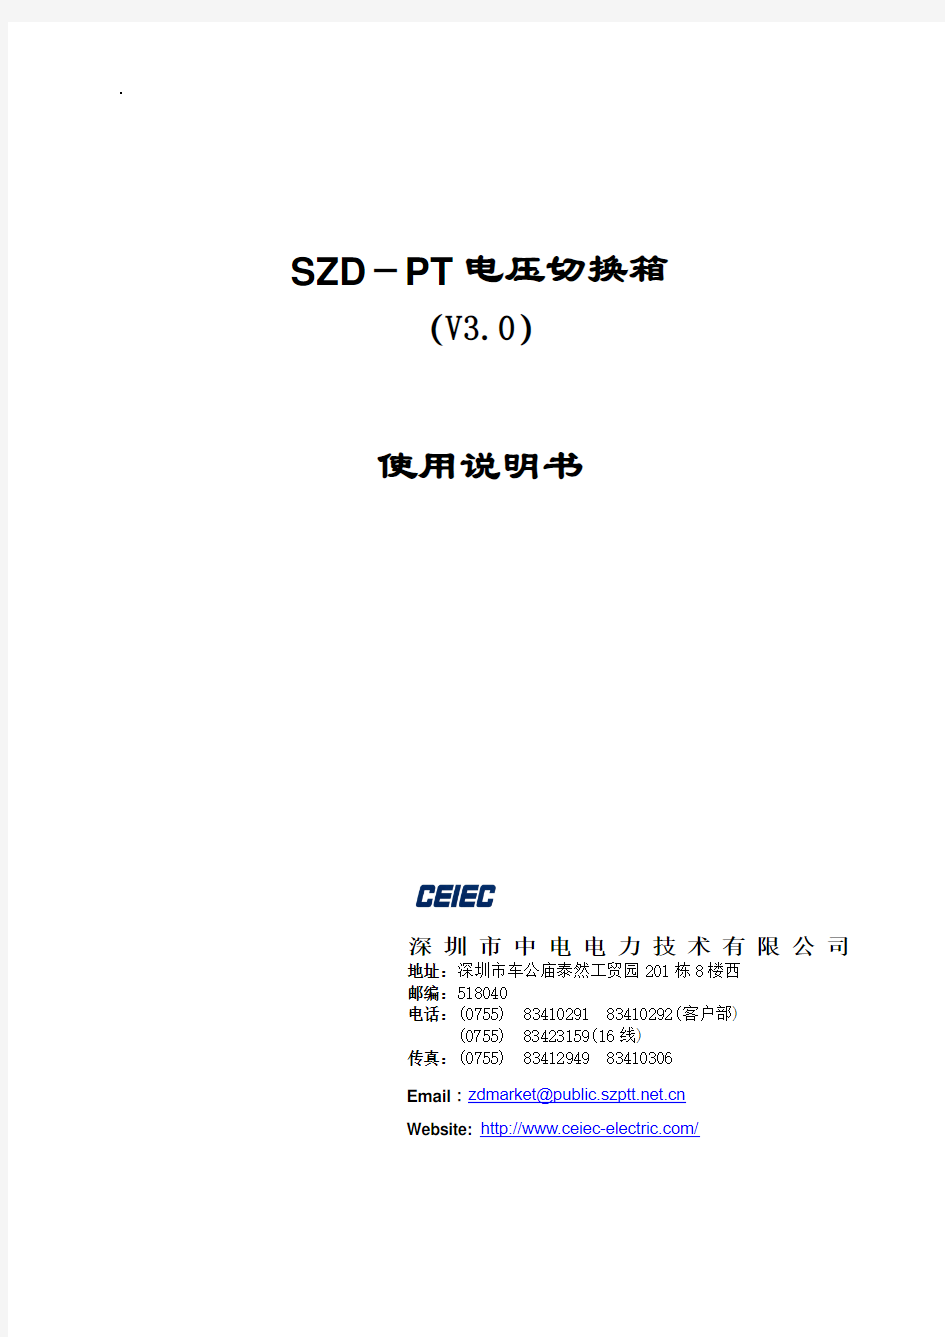 SZD-PT电压切换箱使用说明书_V3.0_20070130